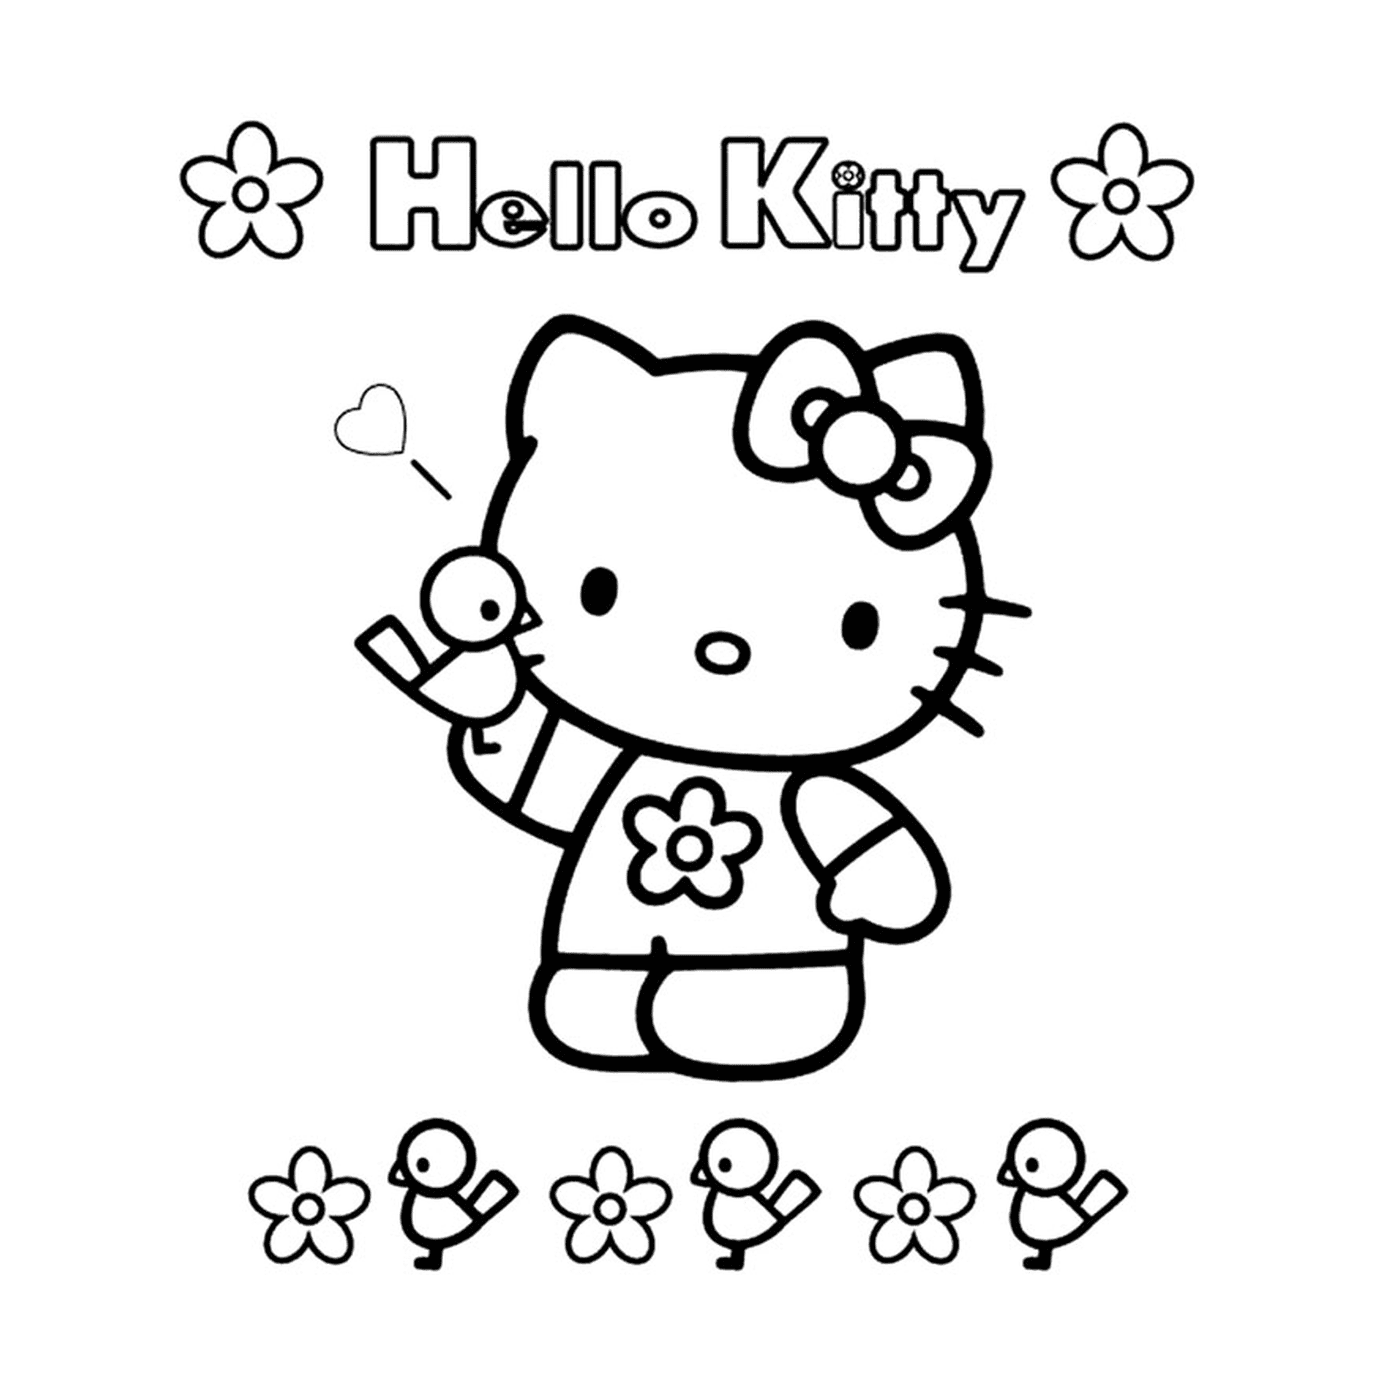   Hello Kitty facile avec des fleurs autour 